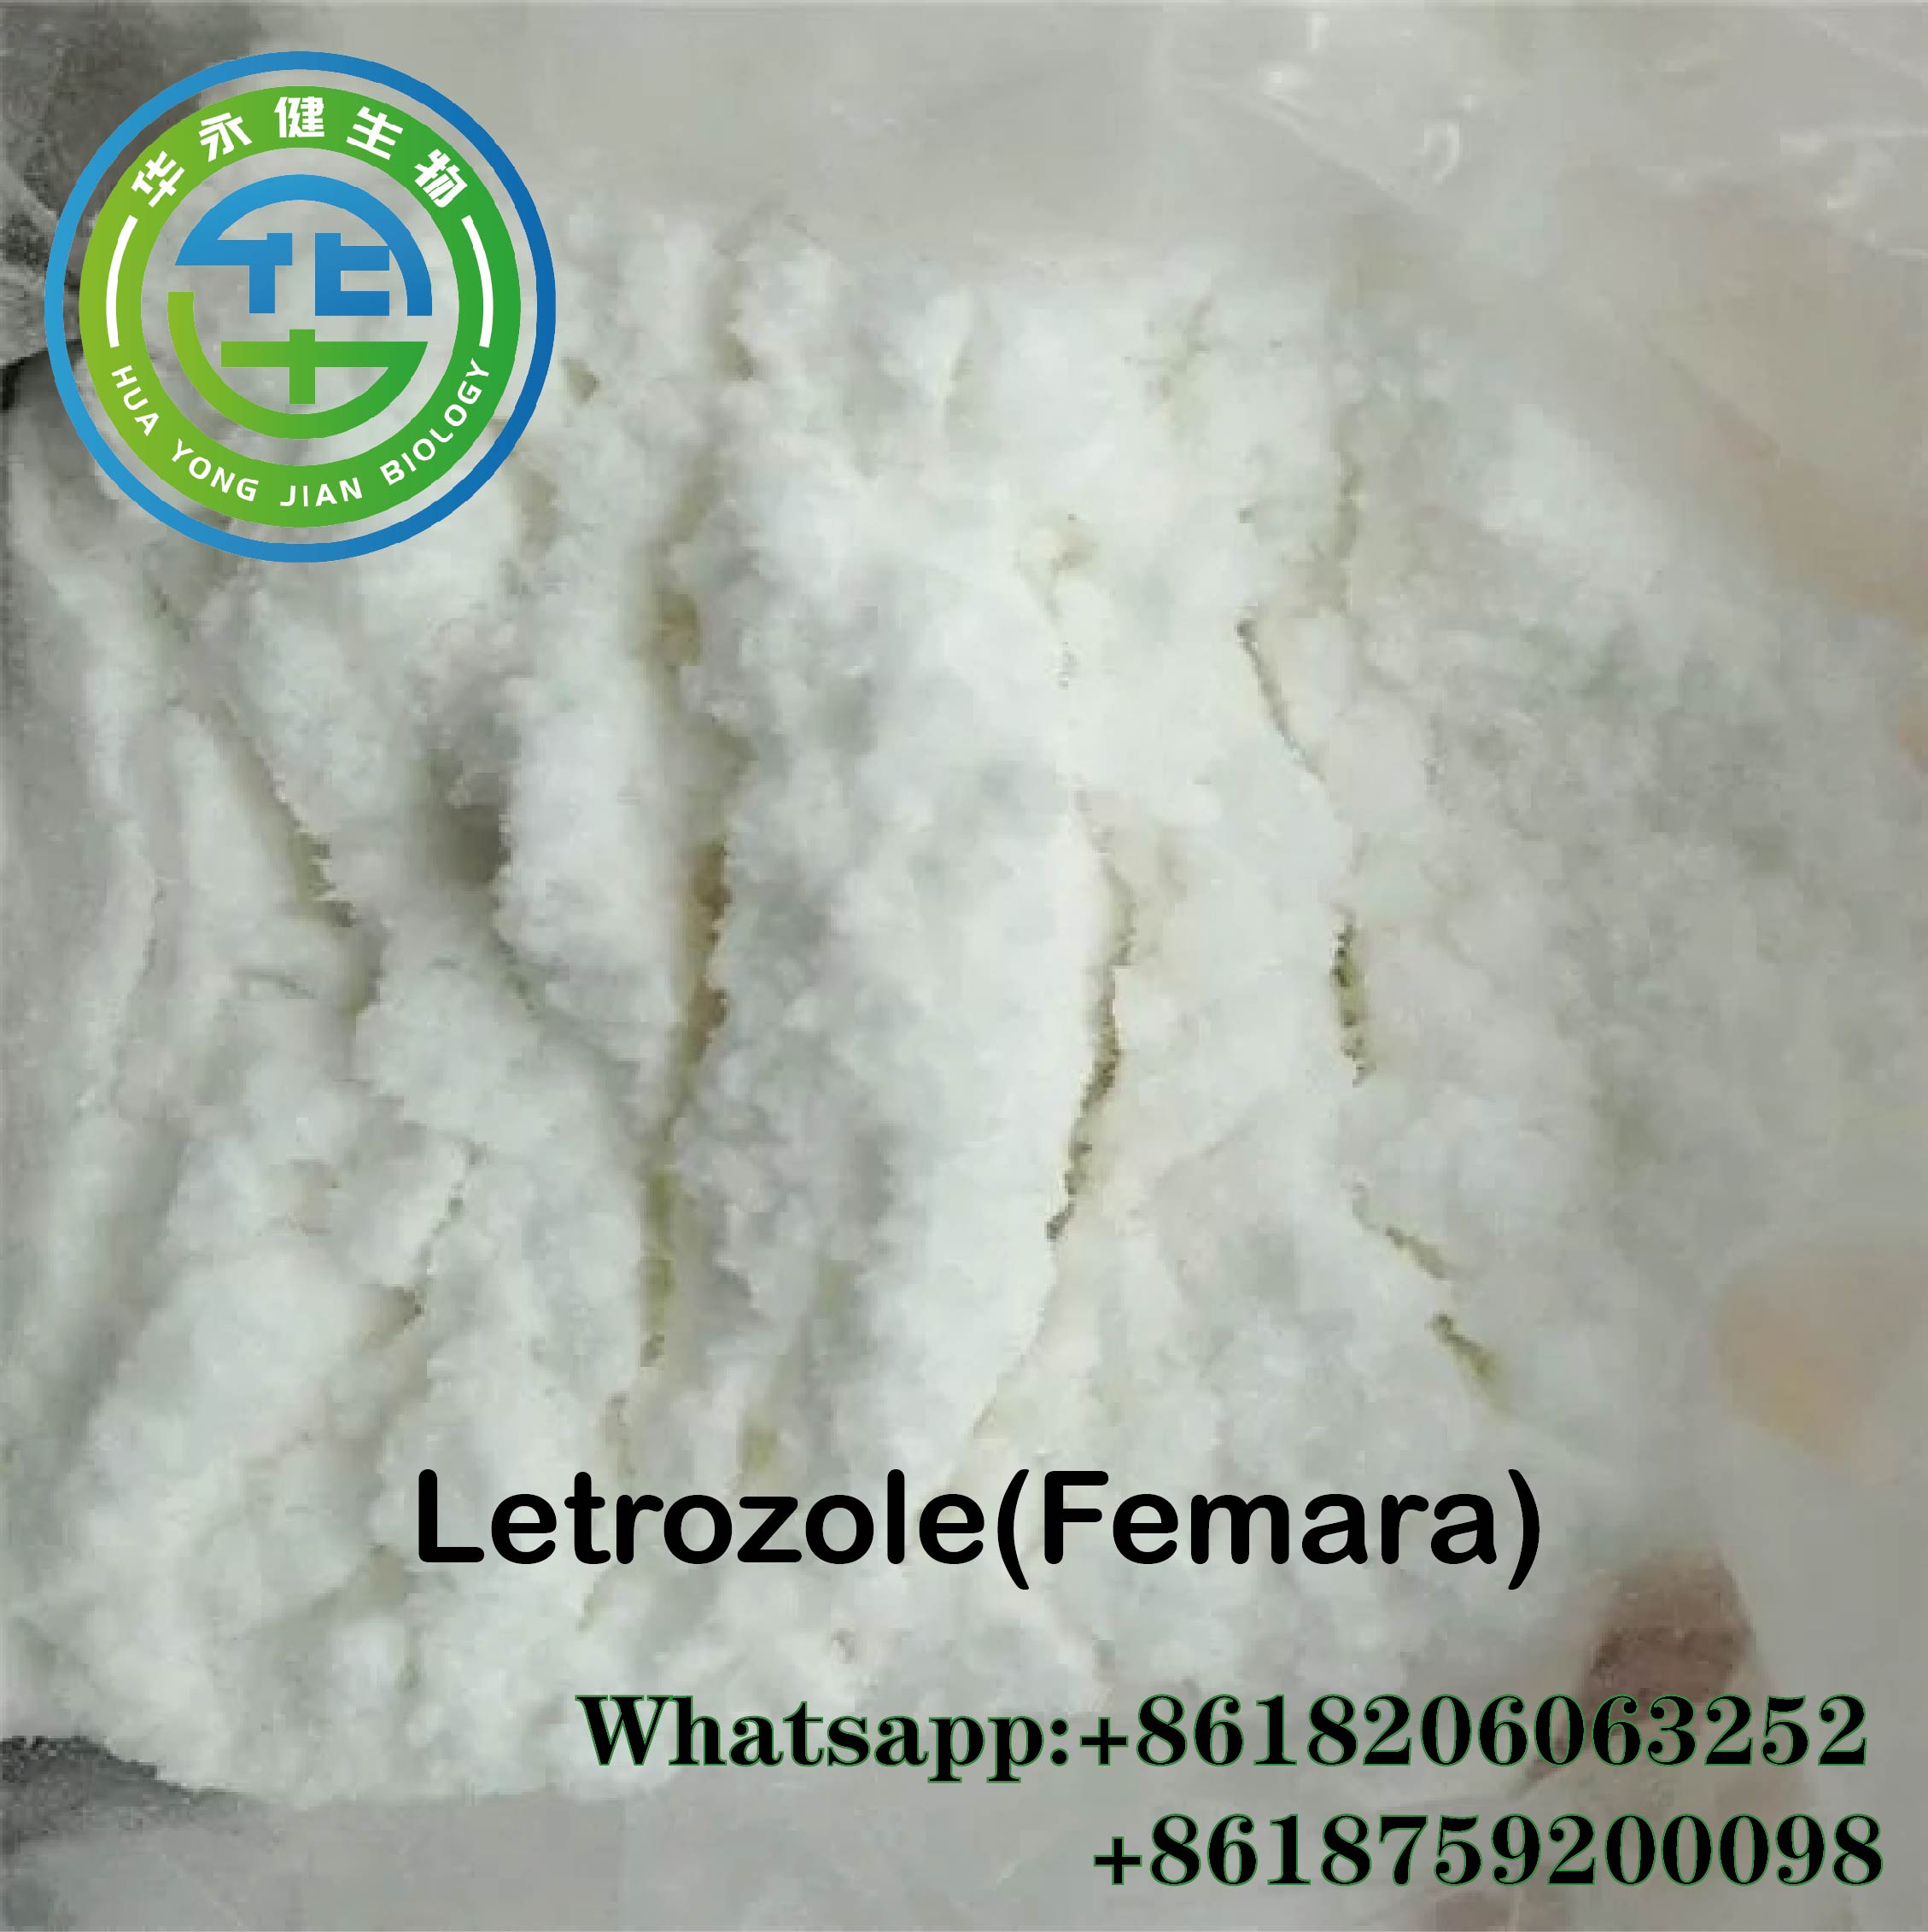 Anti Estrogen raw steroid Powder Letrozole / Femara For Bodybuilding CAS 112809-51-5